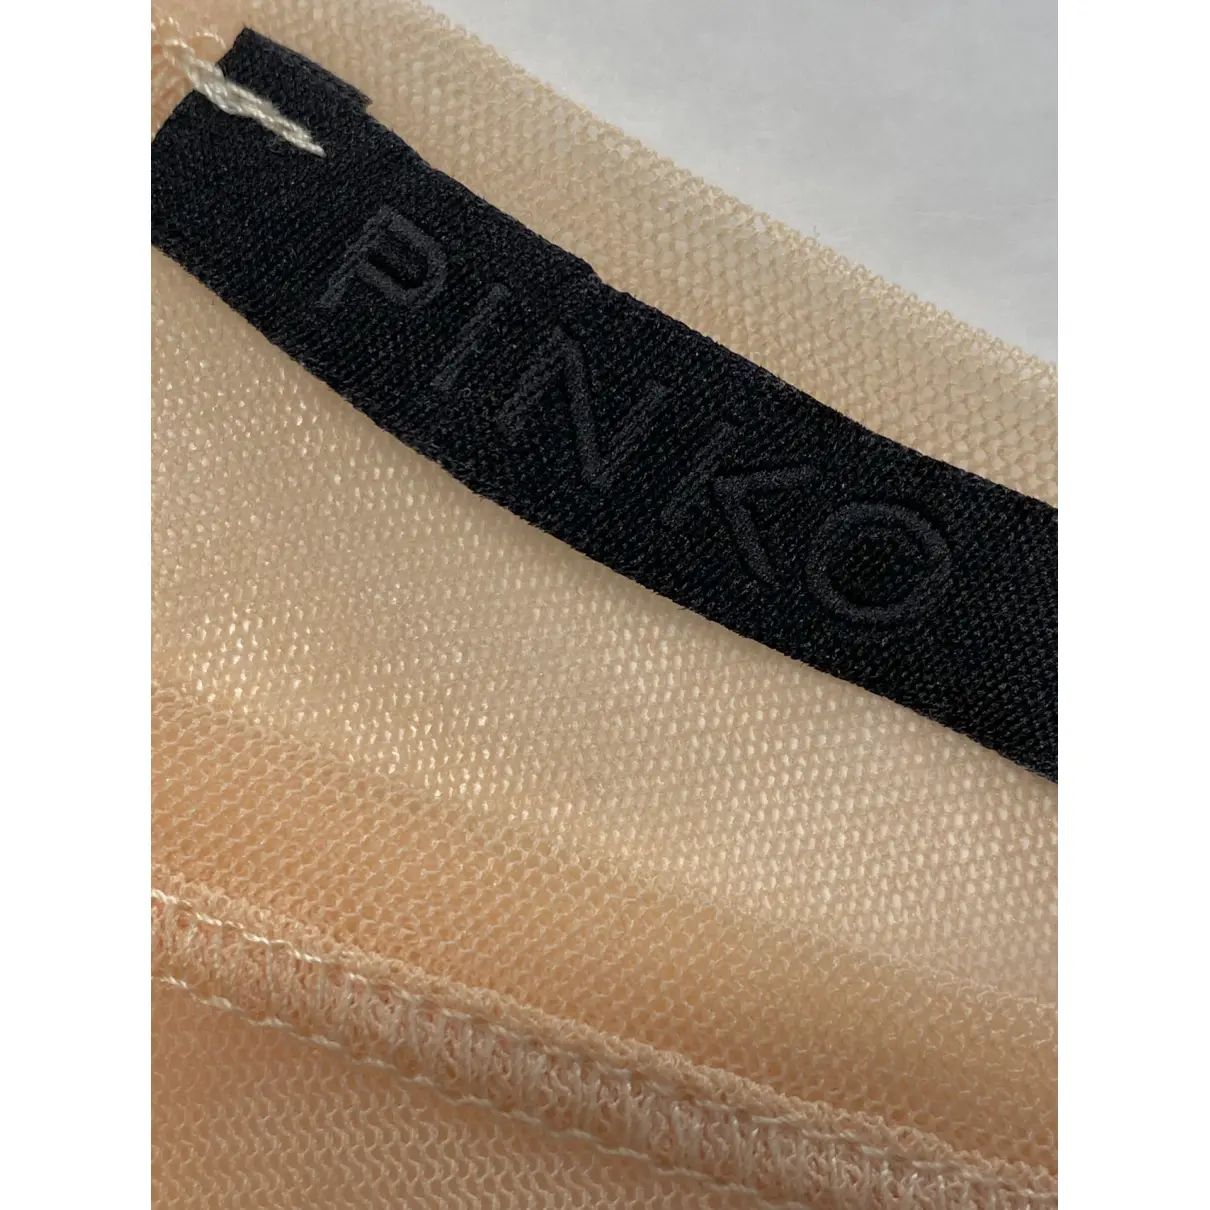 Buy Pinko Dress online